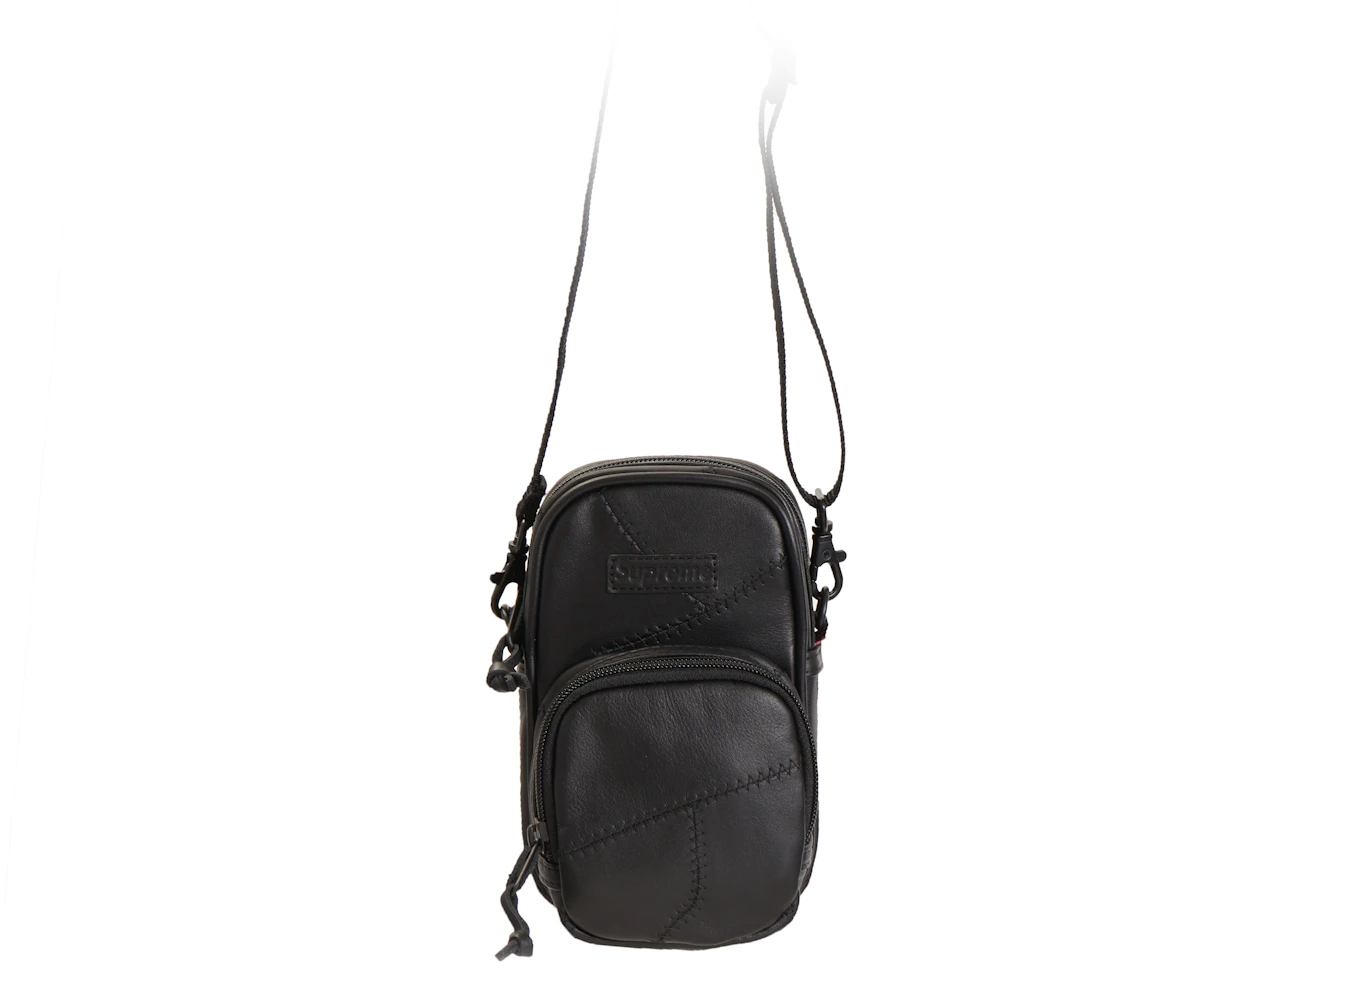 Supreme Leather Handbags